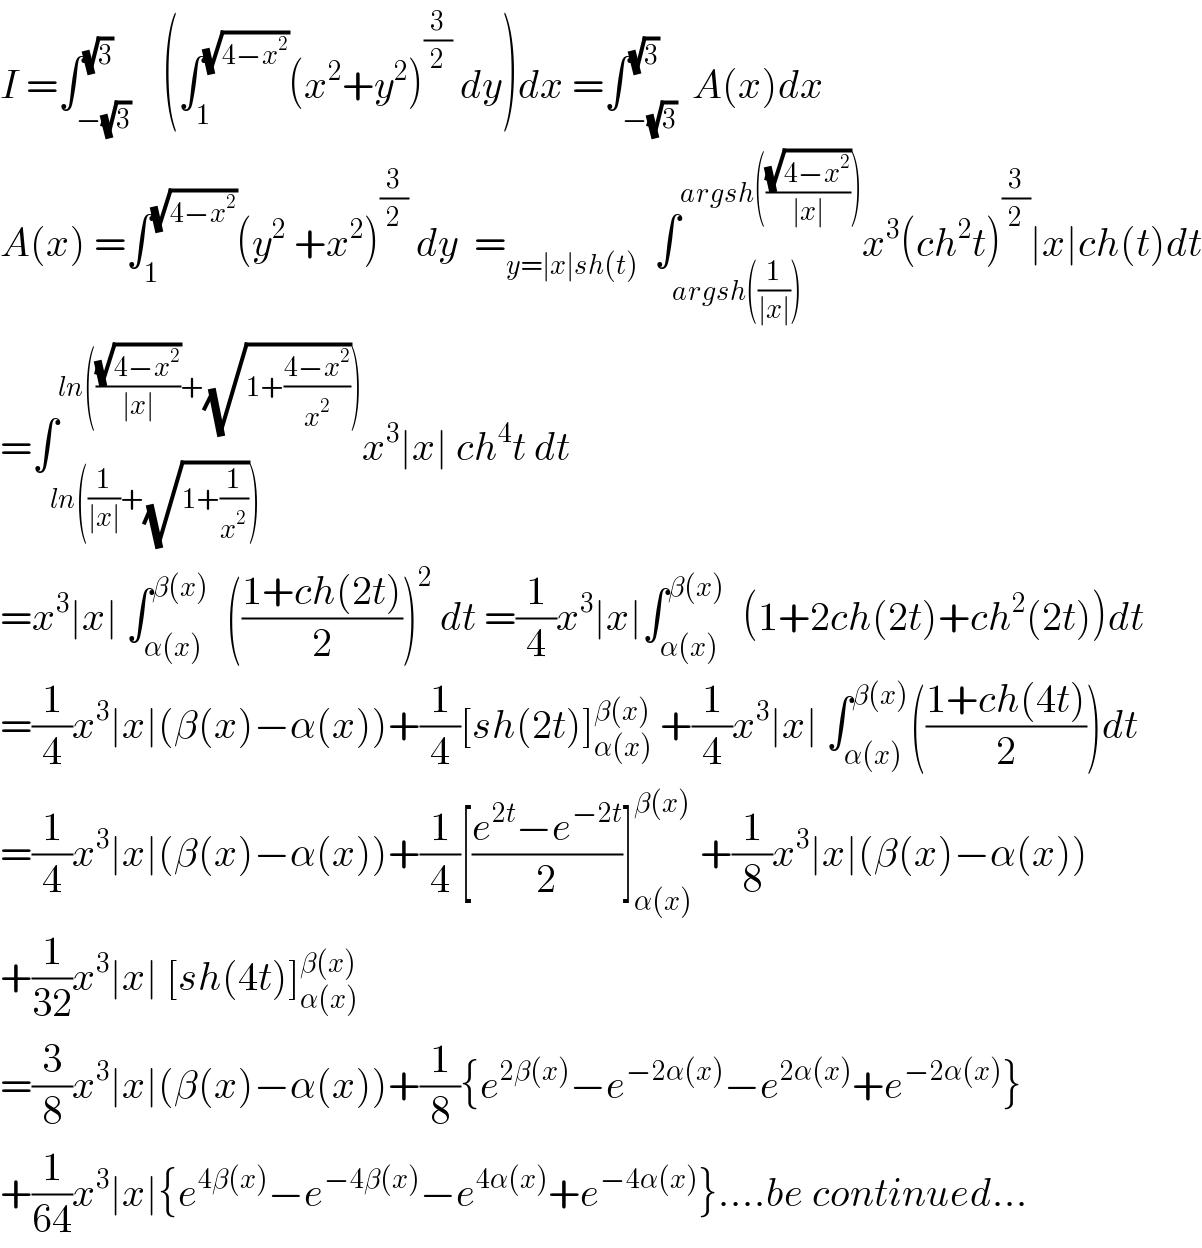 I =∫_(−(√3)) ^(√3)    (∫_1 ^(√(4−x^2 )) (x^2 +y^2 )^(3/2)  dy)dx =∫_(−(√3)) ^(√3)  A(x)dx  A(x) =∫_1 ^(√(4−x^2 )) (y^2  +x^2 )^(3/2)  dy  =_(y=∣x∣sh(t))   ∫_(argsh((1/(∣x∣)))) ^(argsh(((√(4−x^2 ))/(∣x∣)))) x^3 (ch^2 t)^(3/2) ∣x∣ch(t)dt  =∫_(ln((1/(∣x∣))+(√(1+(1/x^2 ))))) ^(ln(((√(4−x^2 ))/(∣x∣))+(√(1+((4−x^2 )/x^2 ))))) x^3 ∣x∣ ch^4 t dt  =x^3 ∣x∣ ∫_(α(x)) ^(β(x))   (((1+ch(2t))/2))^2  dt =(1/4)x^3 ∣x∣∫_(α(x)) ^(β(x))   (1+2ch(2t)+ch^2 (2t))dt  =(1/4)x^3 ∣x∣(β(x)−α(x))+(1/4)[sh(2t)]_(α(x)) ^(β(x))  +(1/4)x^3 ∣x∣ ∫_(α(x)) ^(β(x)) (((1+ch(4t))/2))dt  =(1/4)x^3 ∣x∣(β(x)−α(x))+(1/4)[((e^(2t) −e^(−2t) )/2)]_(α(x)) ^(β(x))  +(1/8)x^3 ∣x∣(β(x)−α(x))  +(1/(32))x^3 ∣x∣ [sh(4t)]_(α(x)) ^(β(x))   =(3/8)x^3 ∣x∣(β(x)−α(x))+(1/8){e^(2β(x)) −e^(−2α(x)) −e^(2α(x)) +e^(−2α(x)) }  +(1/(64))x^3 ∣x∣{e^(4β(x)) −e^(−4β(x)) −e^(4α(x)) +e^(−4α(x)) }....be continued...  